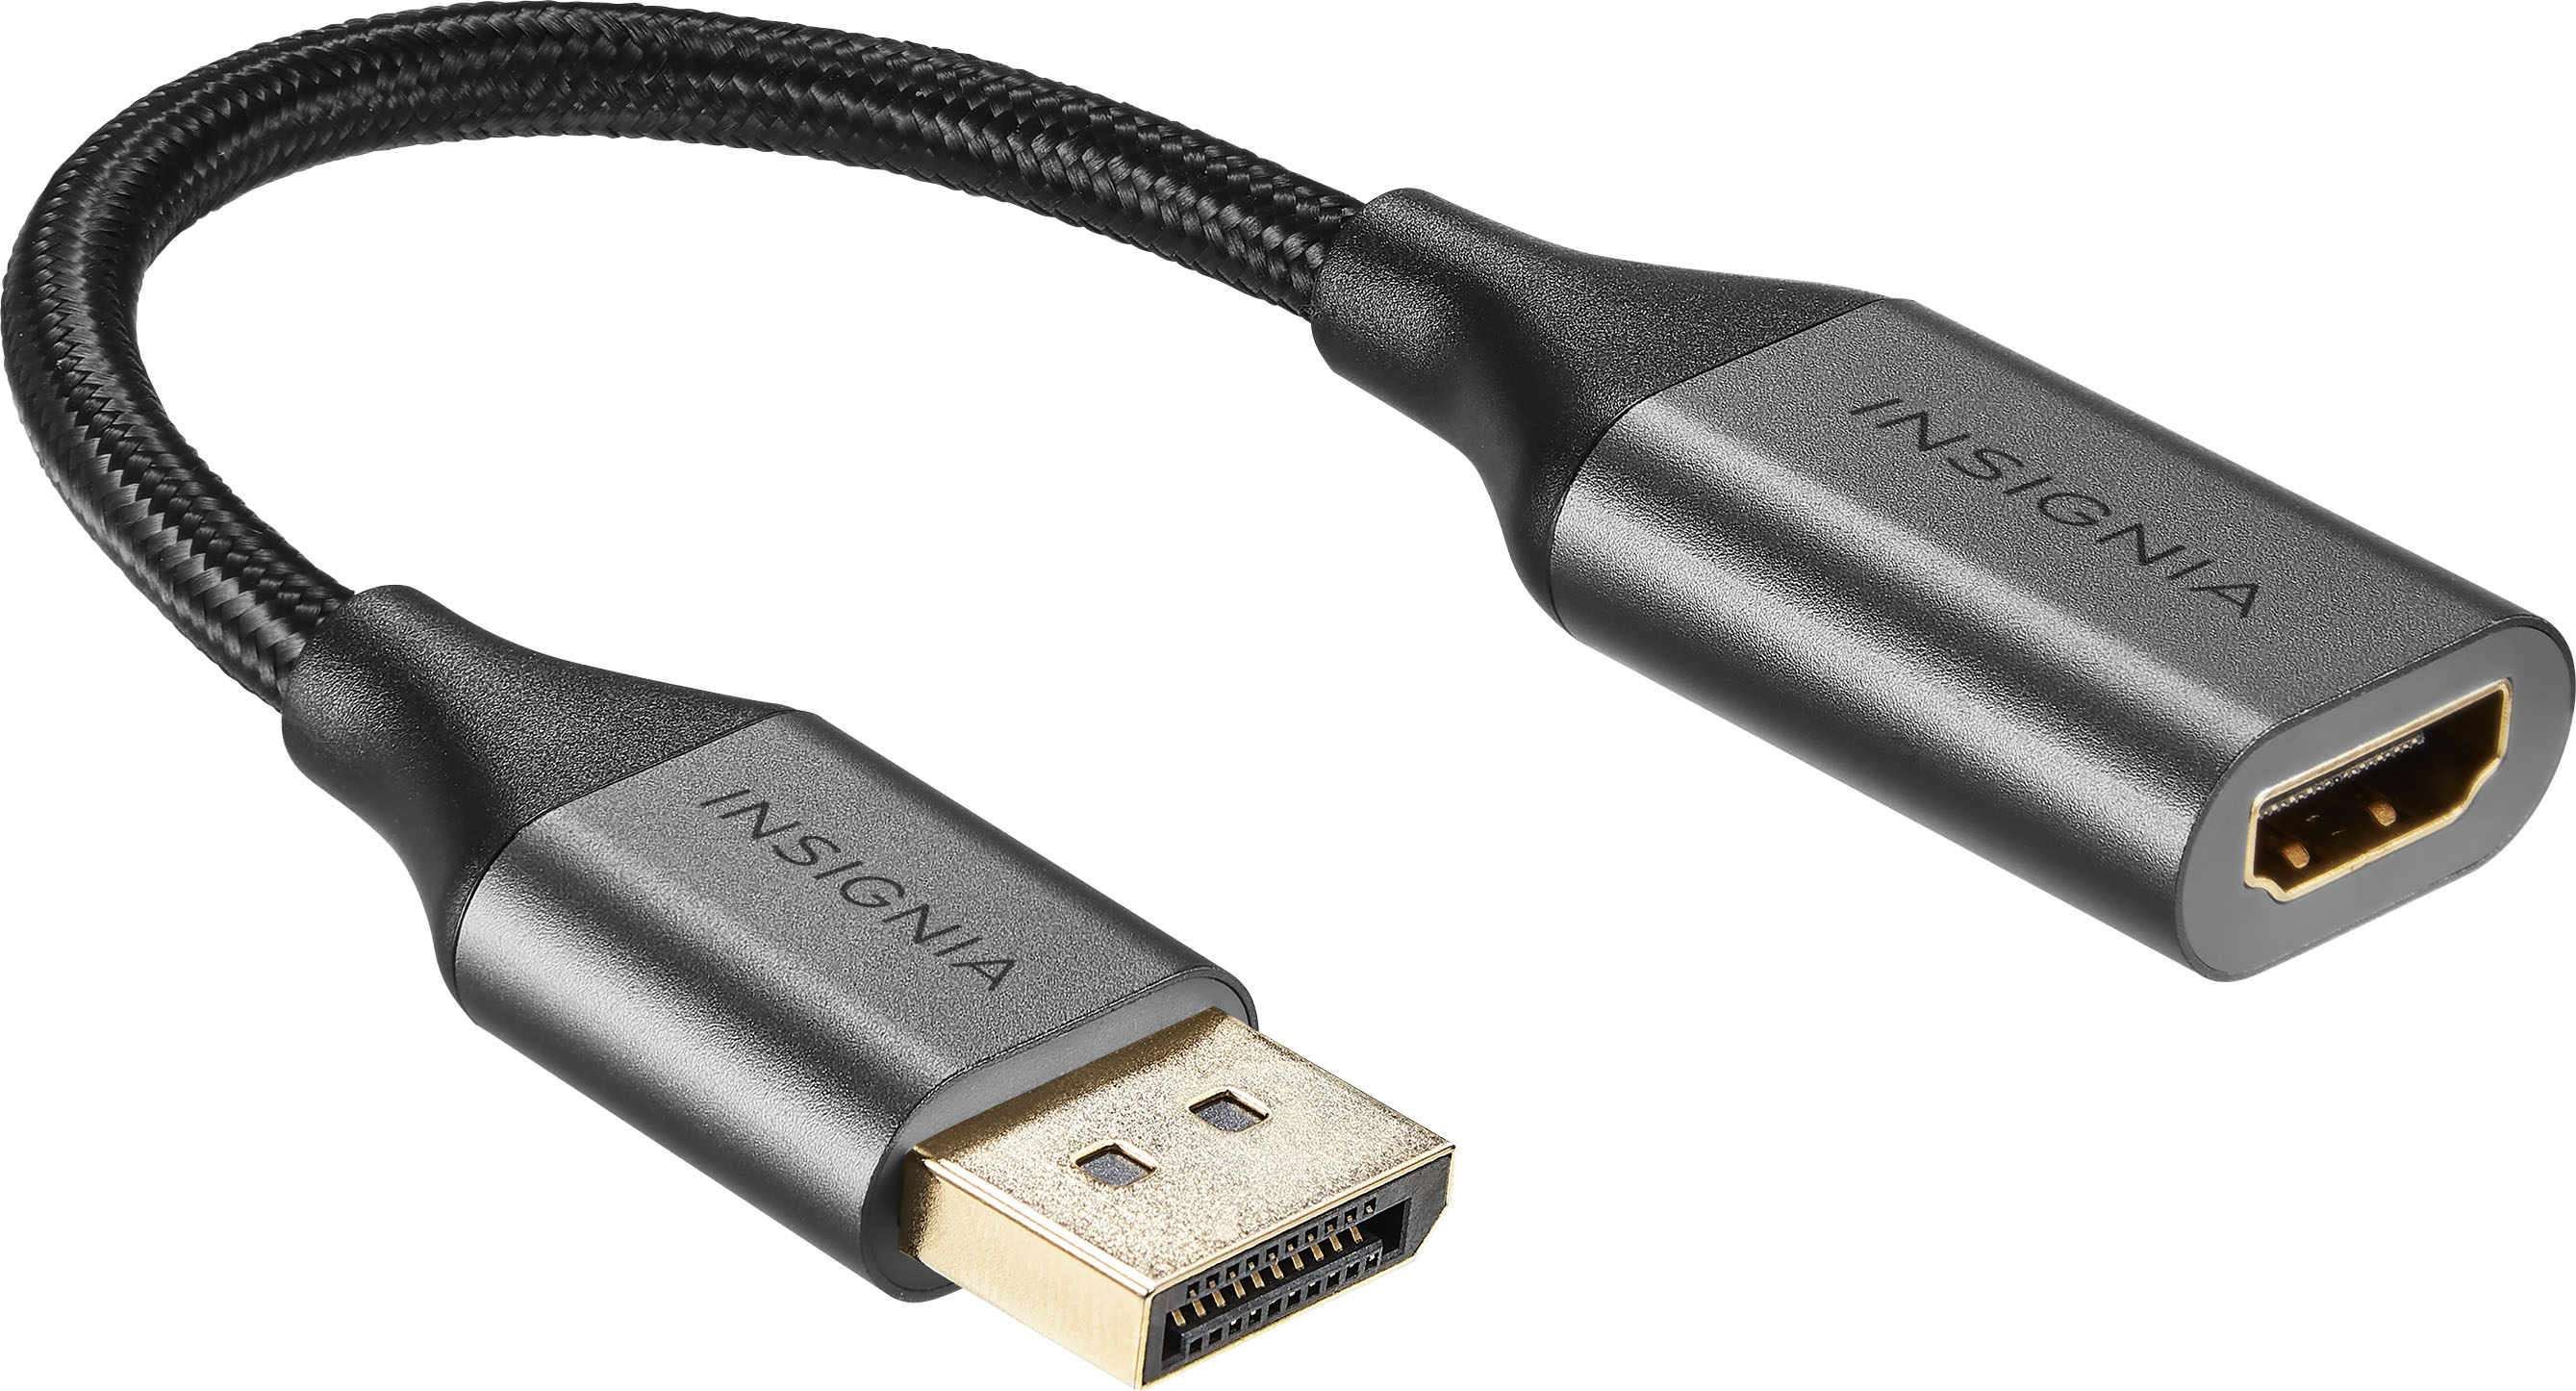 Angle View: Insignia™ - 10’ Mini DisplayPort to HDMI Cable - Black